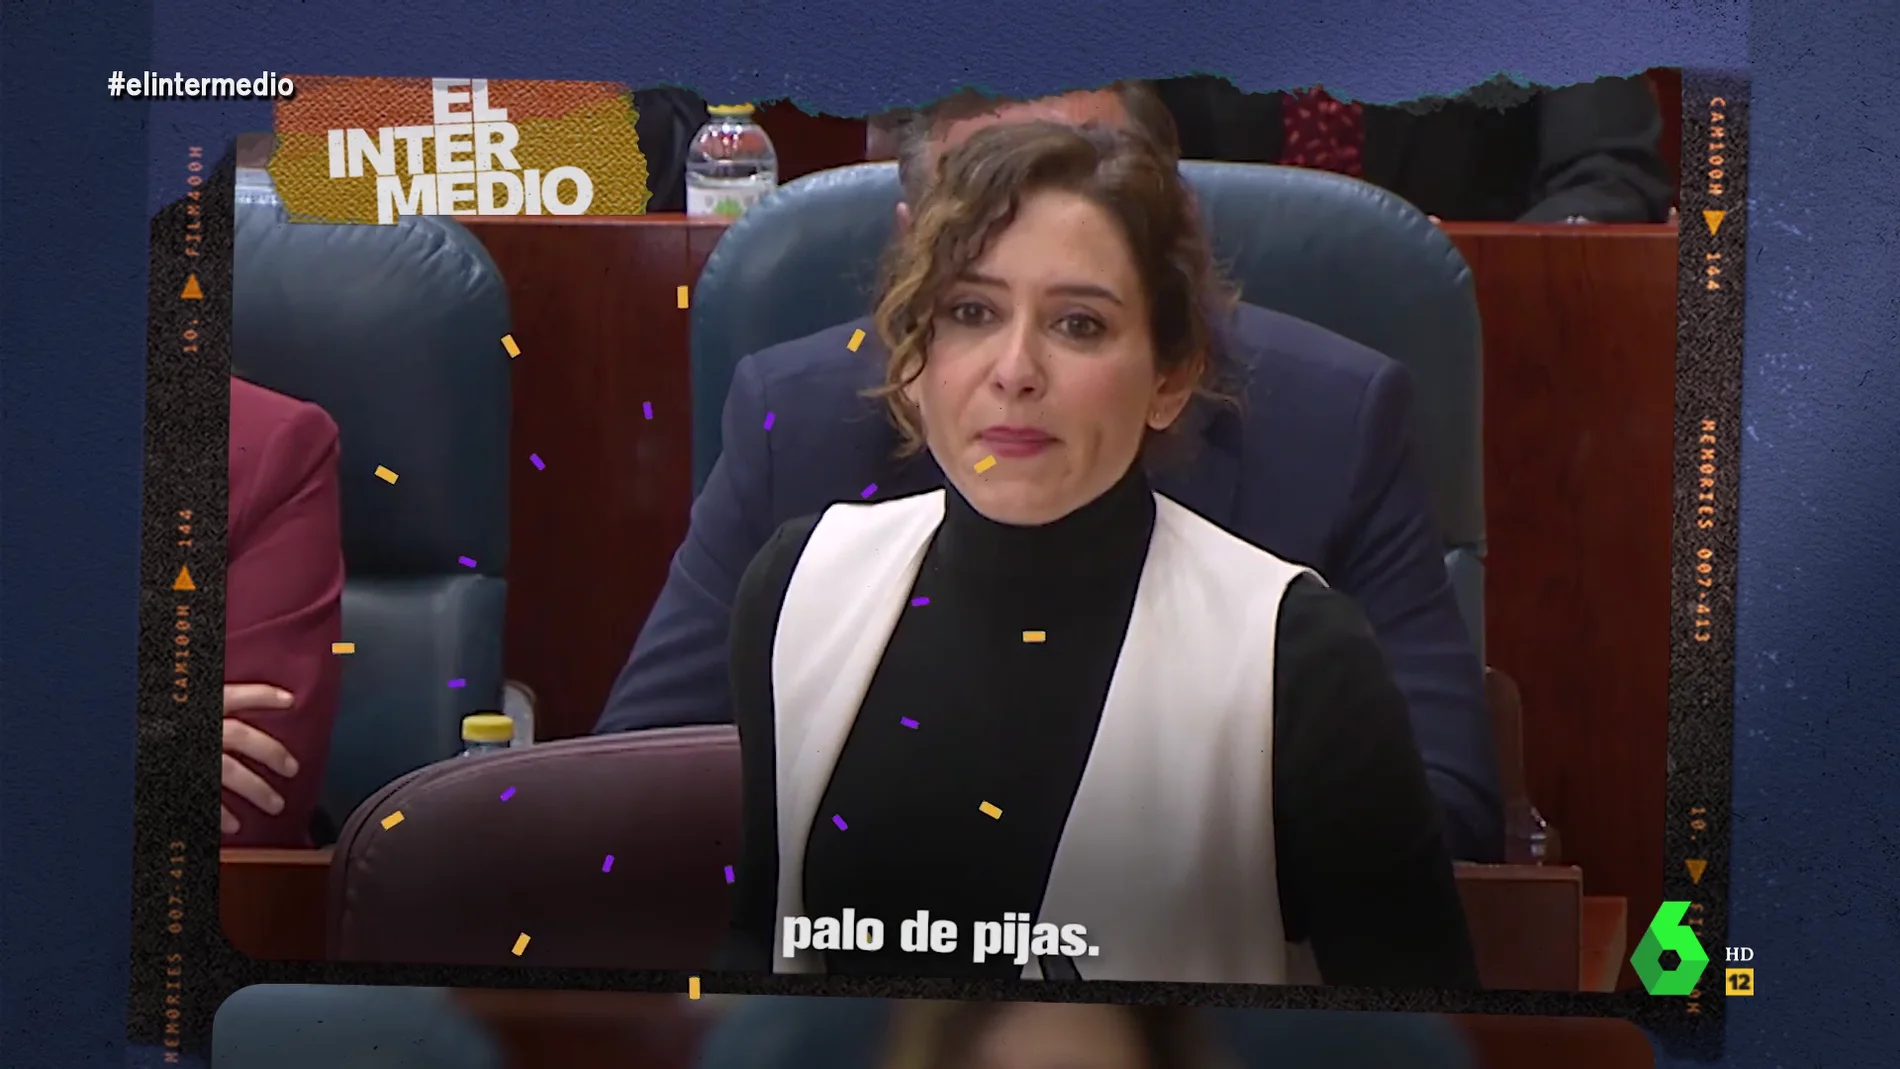 "Palo de pijas, yo sí soy una mujer libre": el hitazo de Isabel Díaz Ayuso en El Intermedio contra el "feminismo del 8M"